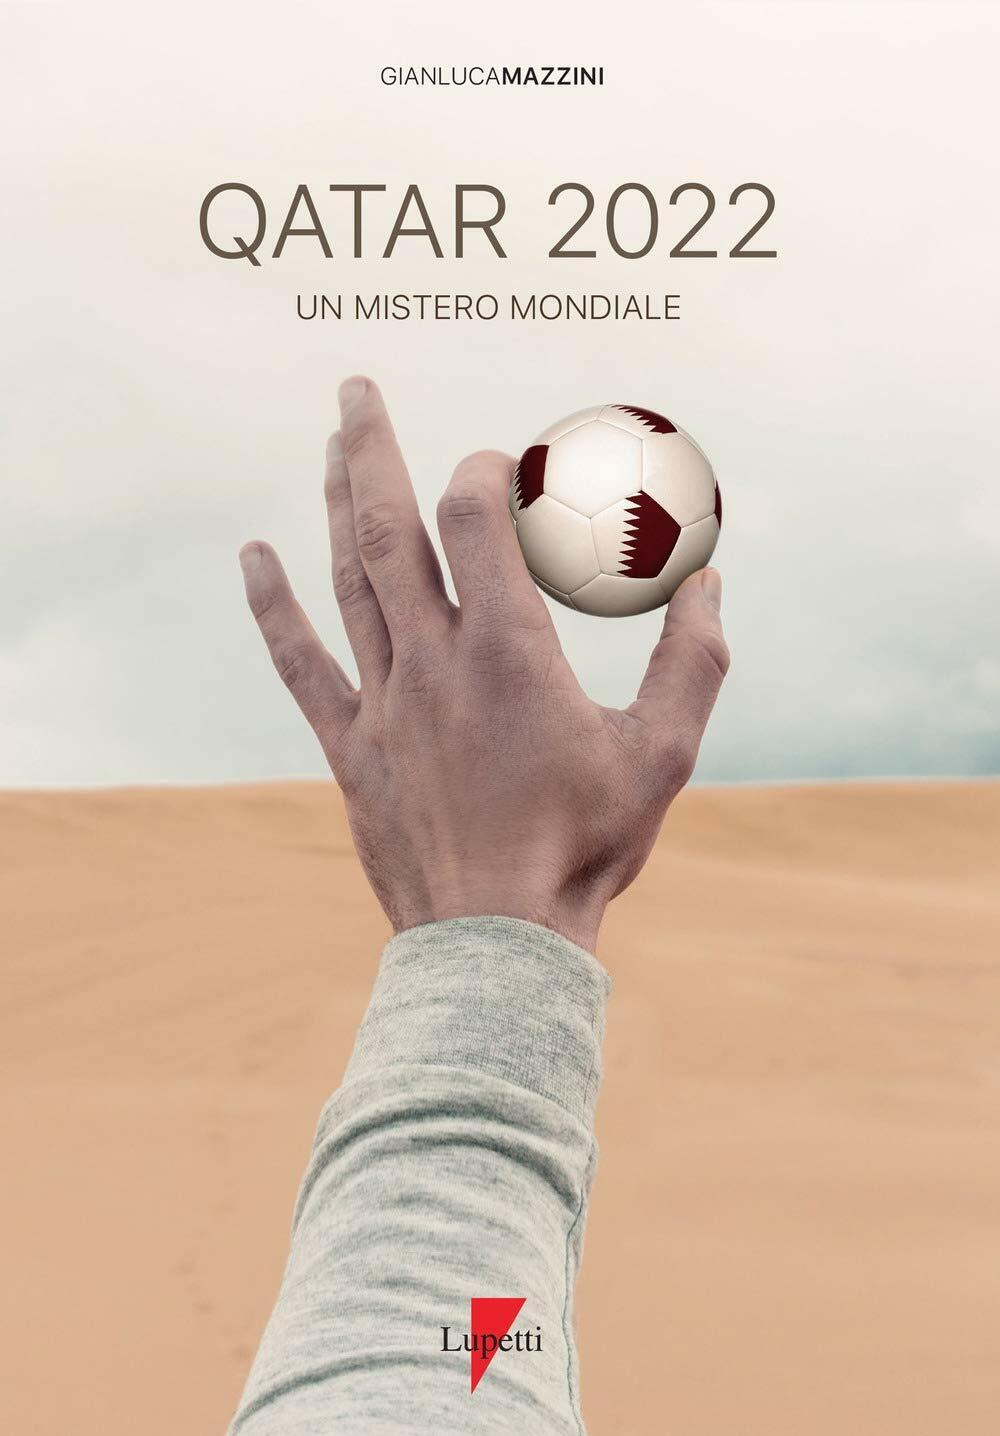 Qatar 2022. Un mistero mondiale -Gianluca Mazzini - Lupetti, 2019